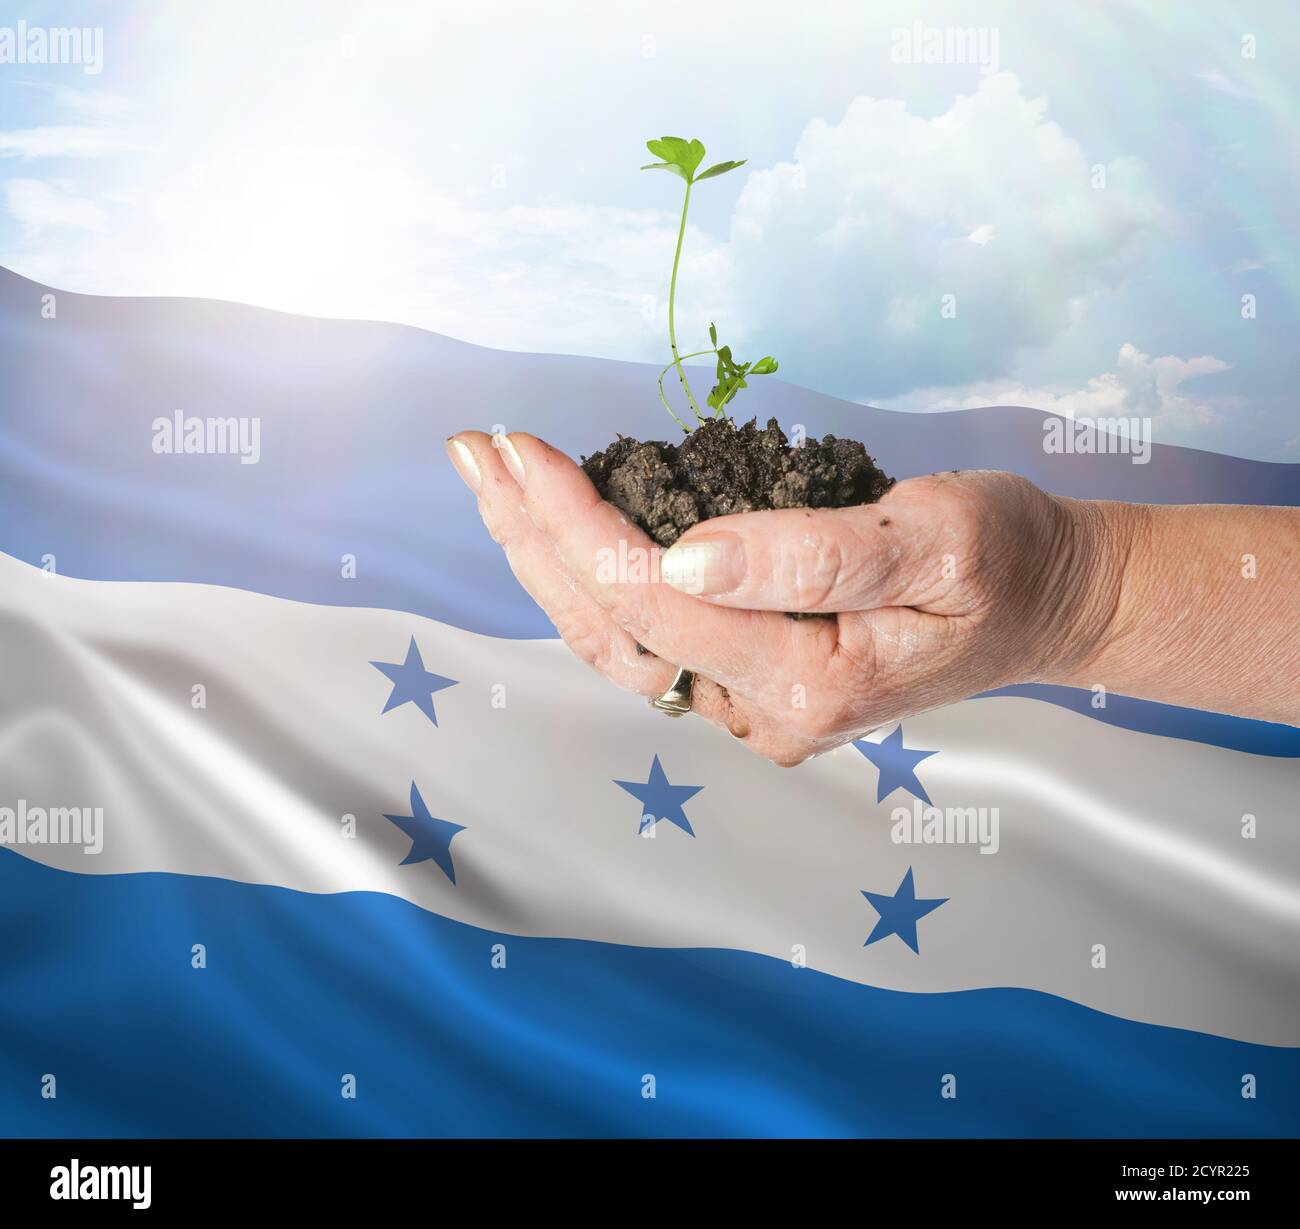 Honduras crecimiento y nuevo comienzo. Concepto de energía renovable verde y ecología. Mano sosteniendo planta joven. Foto de stock